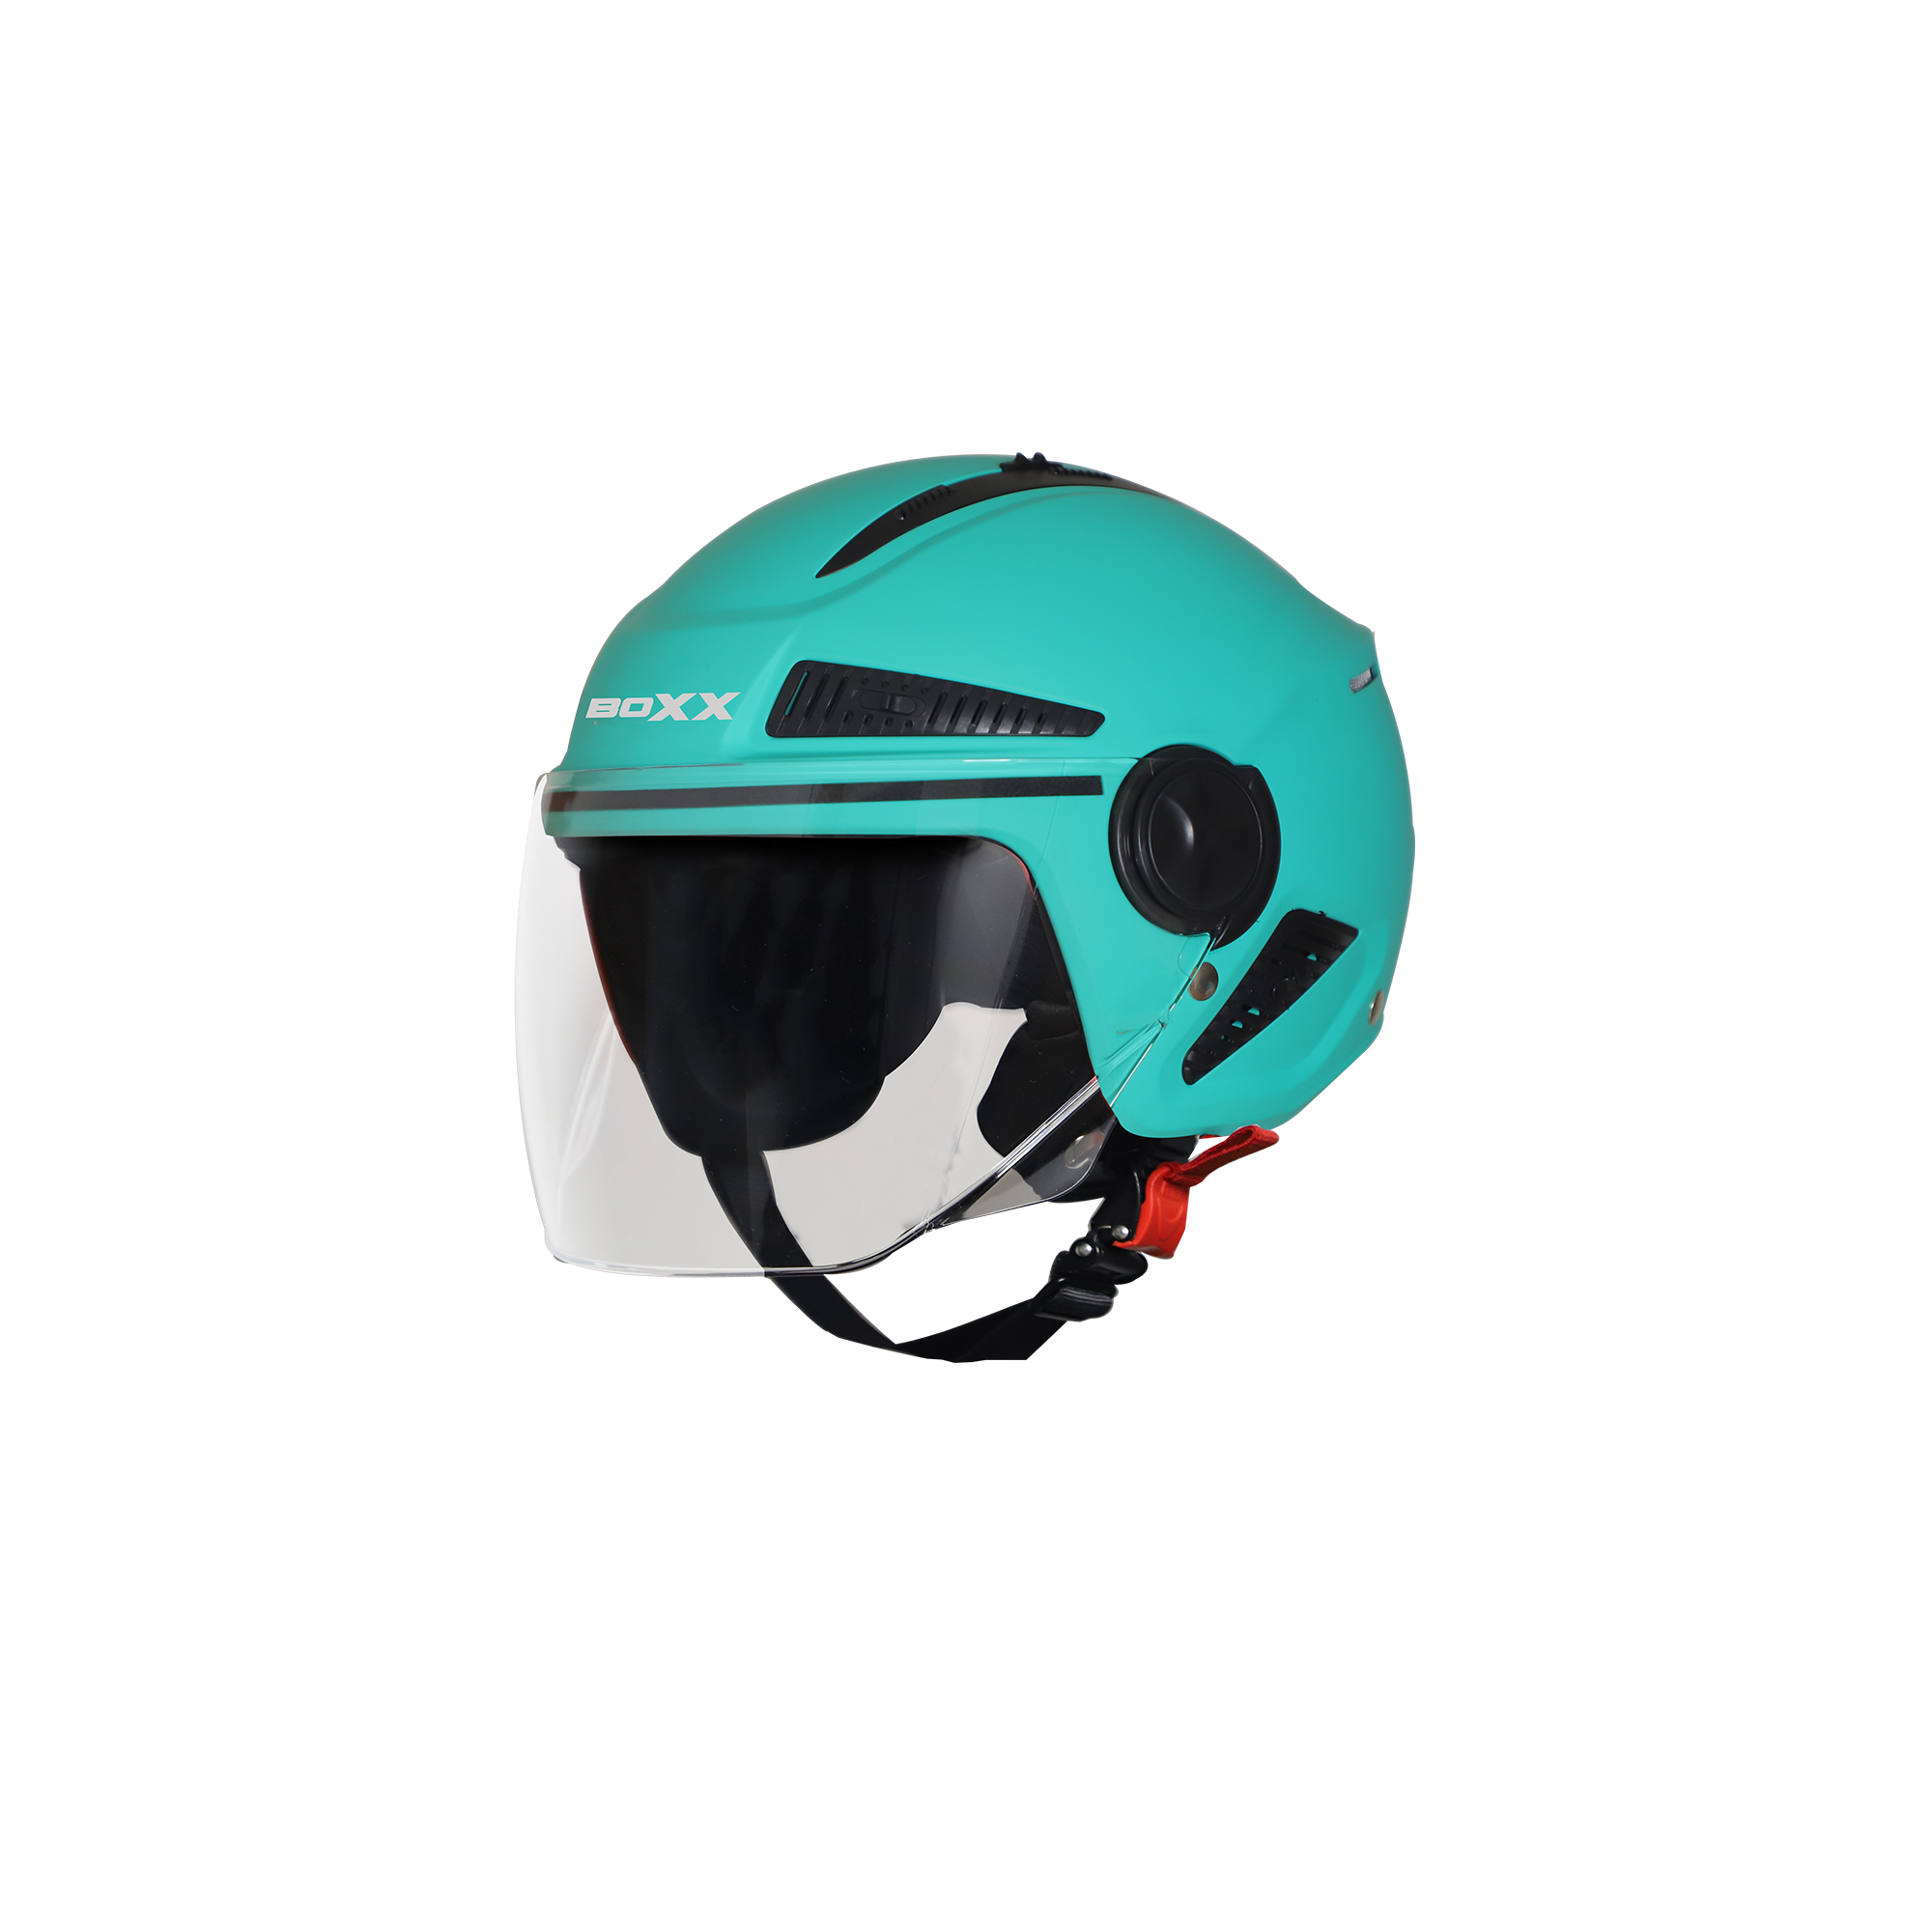 Steelbird SBH-24 Boxx ISI Certified Open Face Helmet for Men and Women (Matt Caribbean Green with Clear Visor)